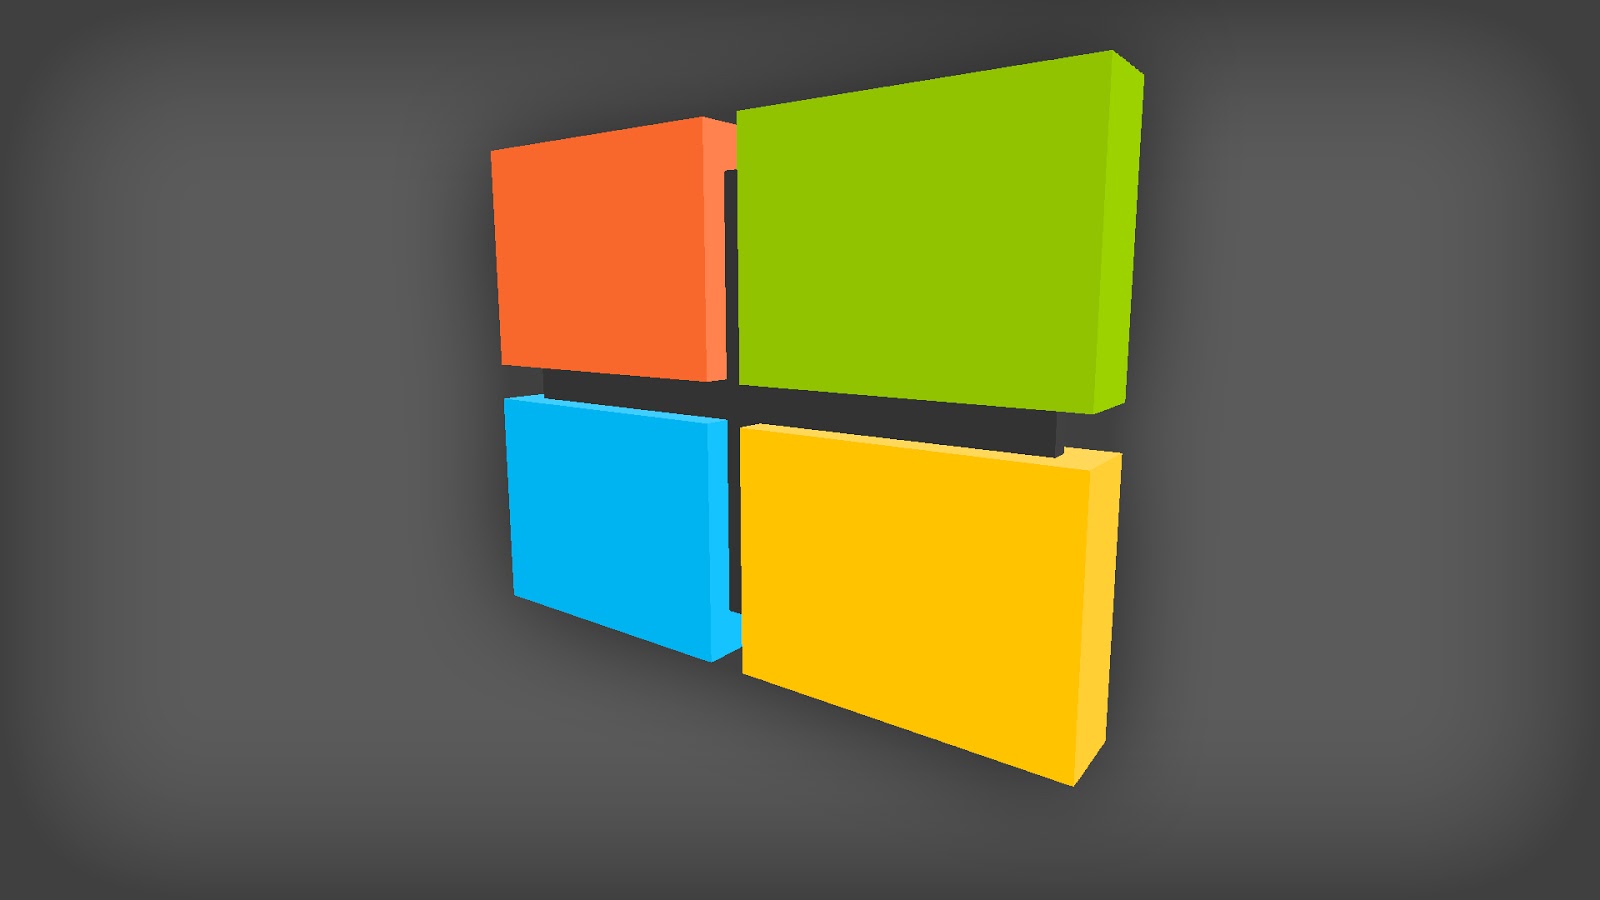 Windows 10 Logo 3d - 1600x900 Wallpaper 